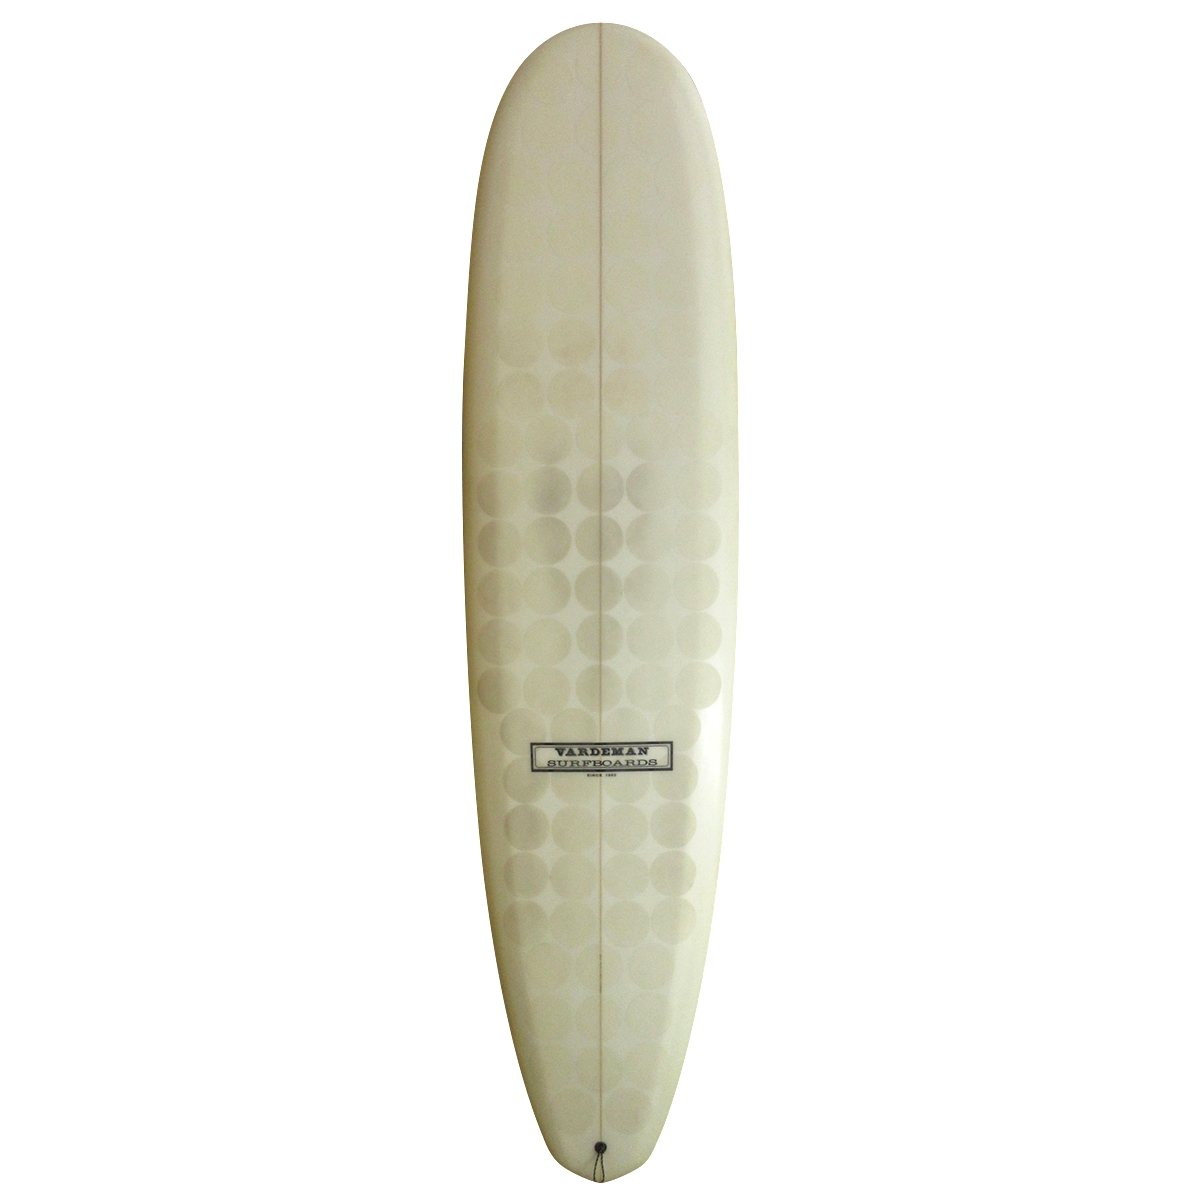 VARDEMAN SURFBOARDS / SUPER BIGGIE MINI EPS 8`0